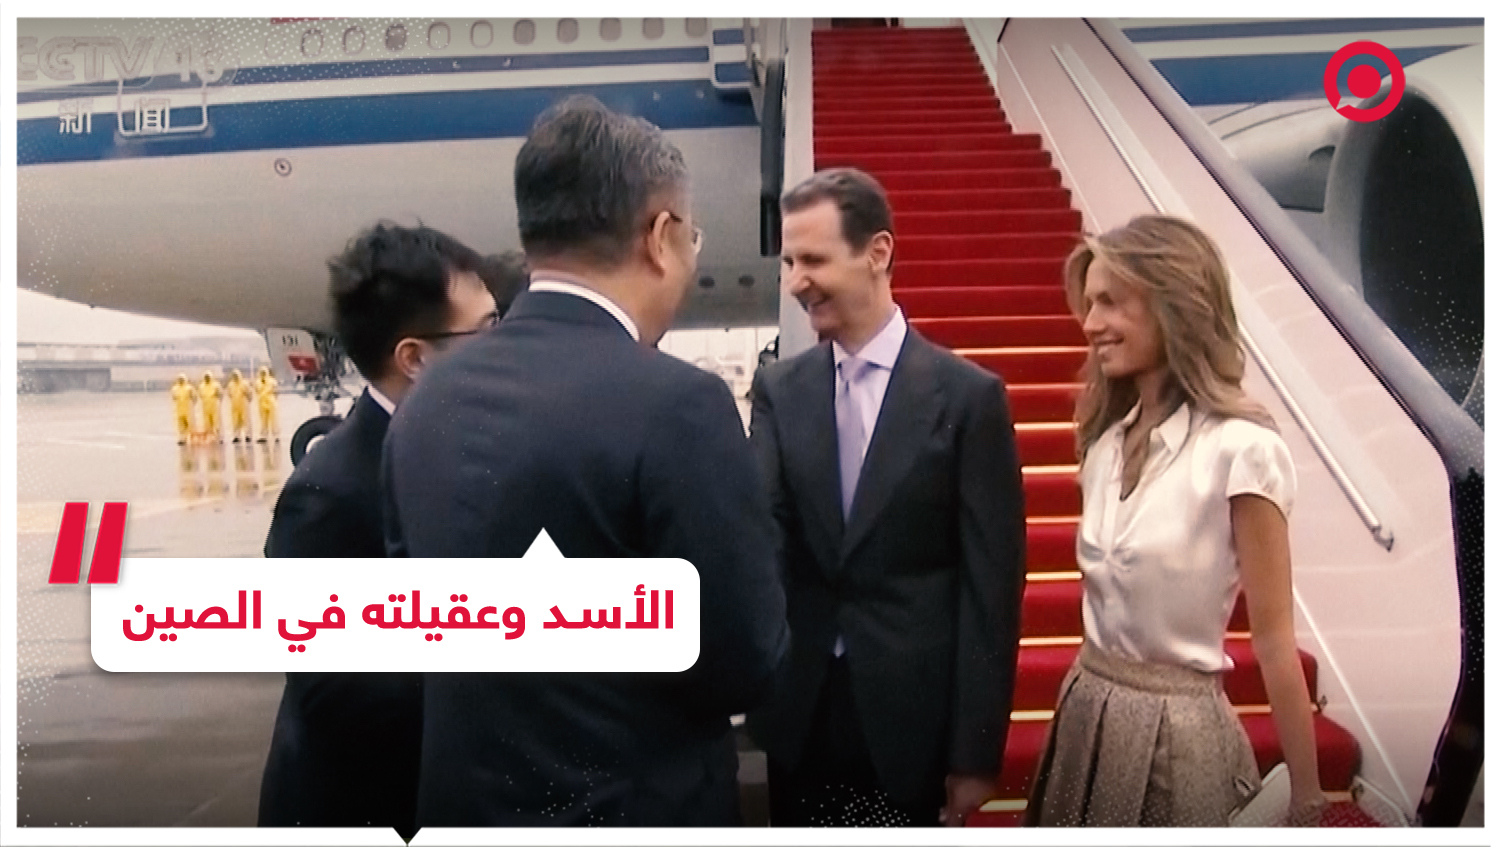 الرئيس السوري بشار الأسد والسيدة الأولى أسماء الأسد يصلان الصين